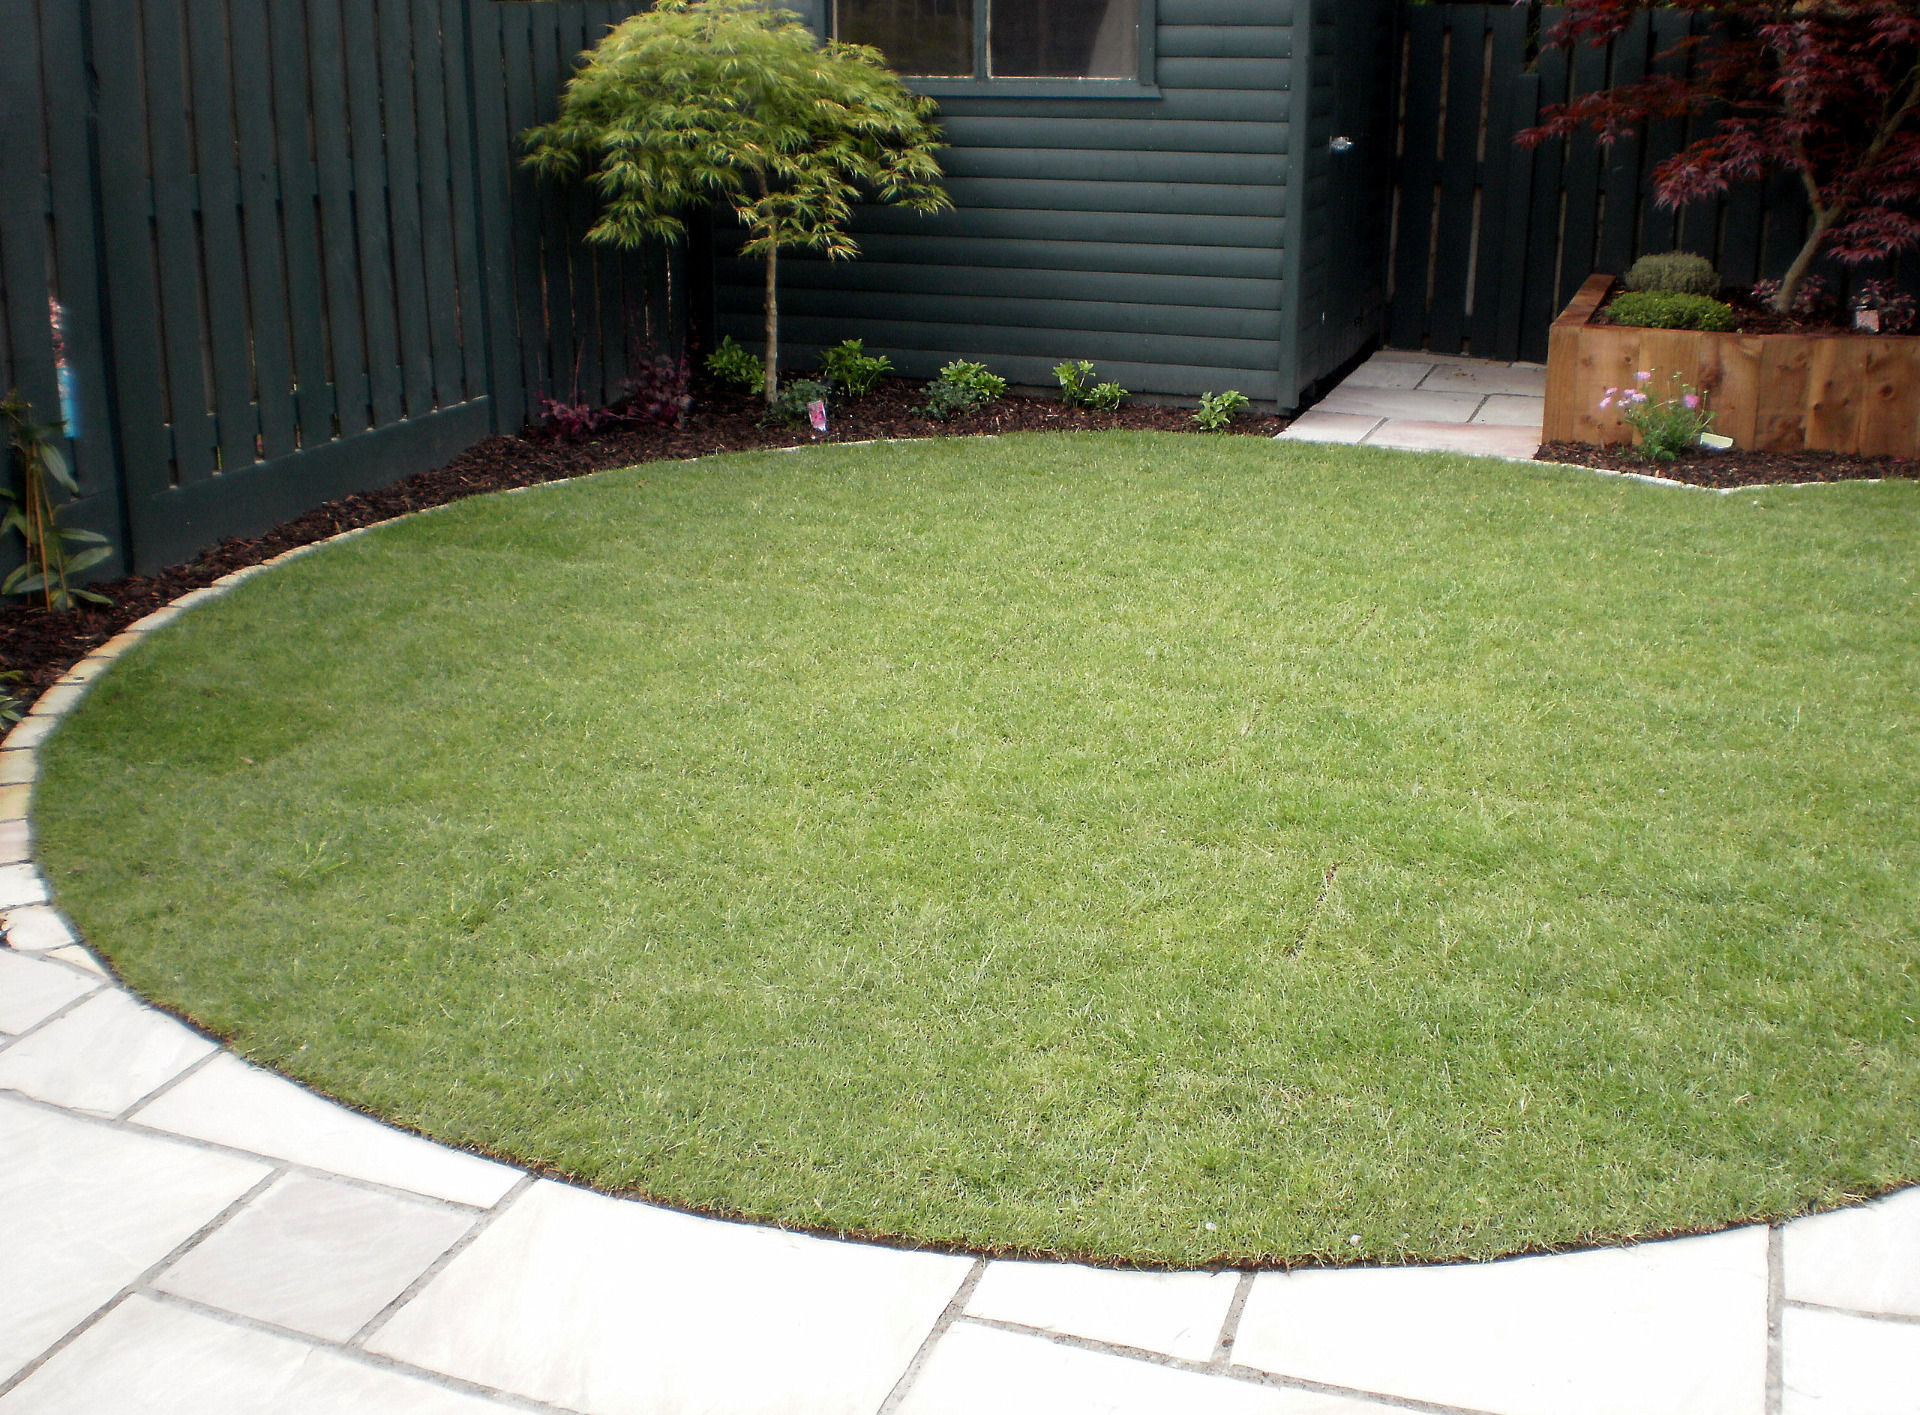 Patio design for small garden in Rathfarnham, based on circular theme | Owen Chubb Garden Designe circular